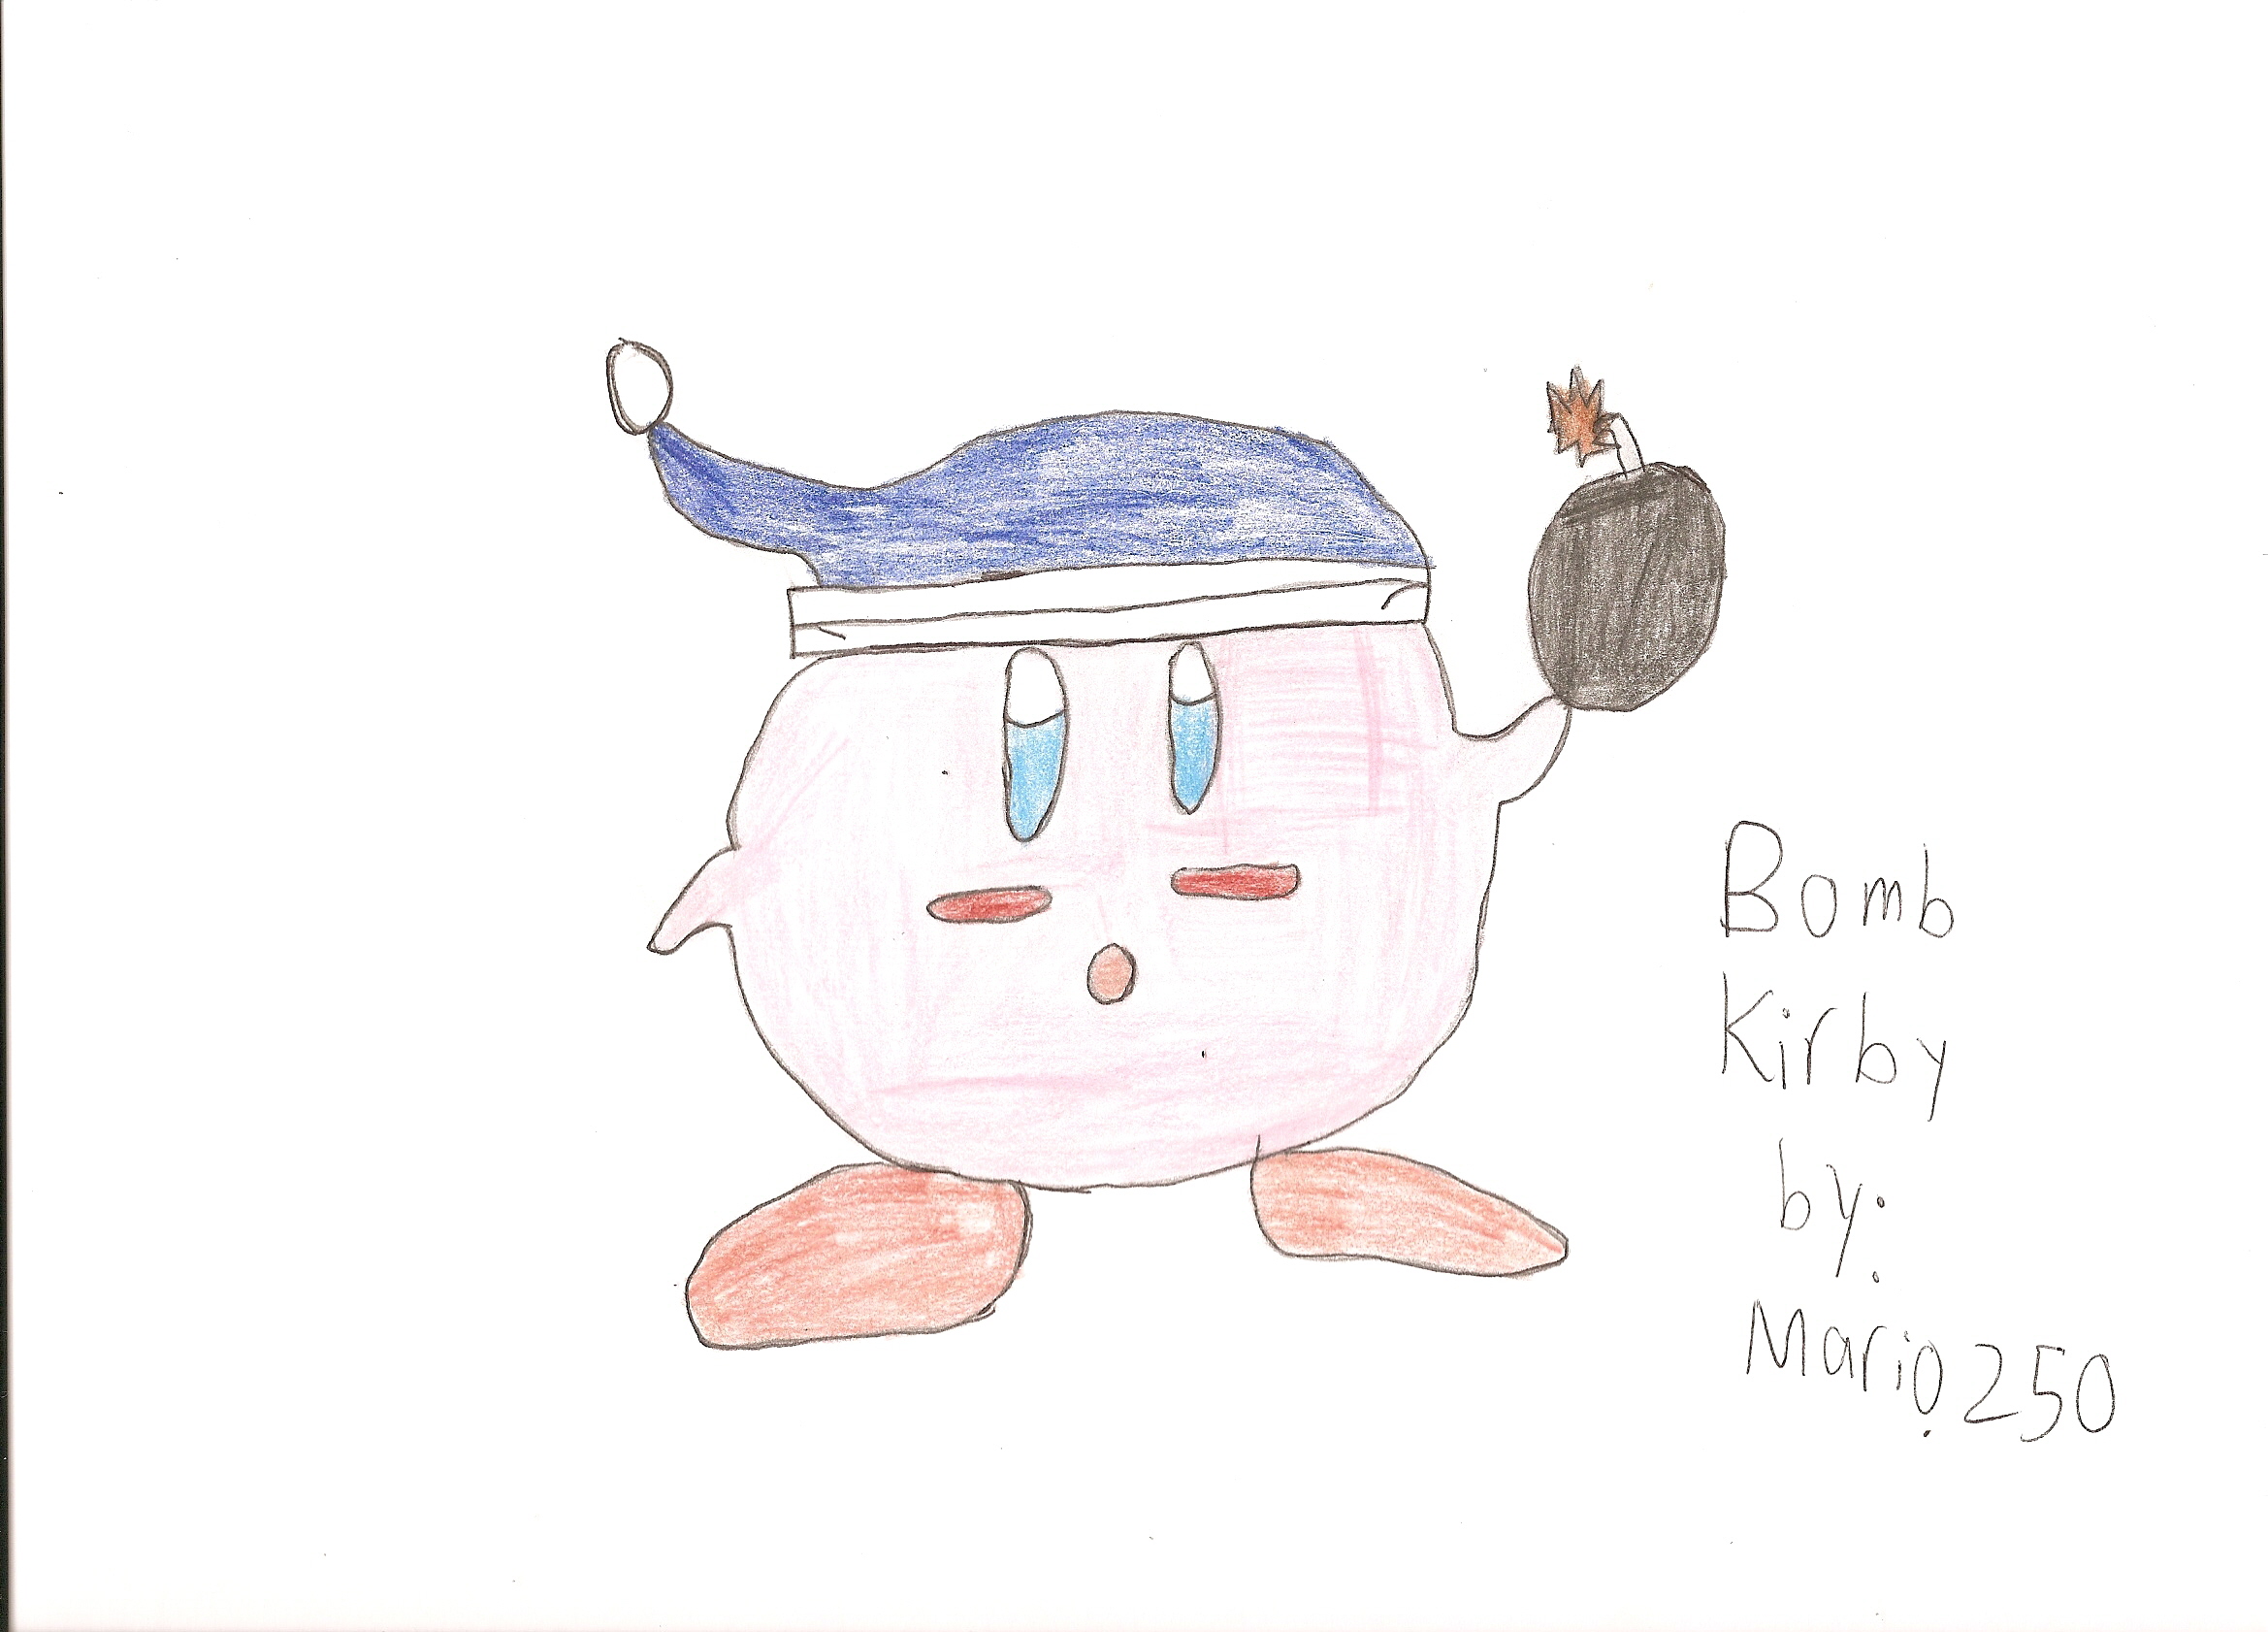 Bomb Kirby by Mario250